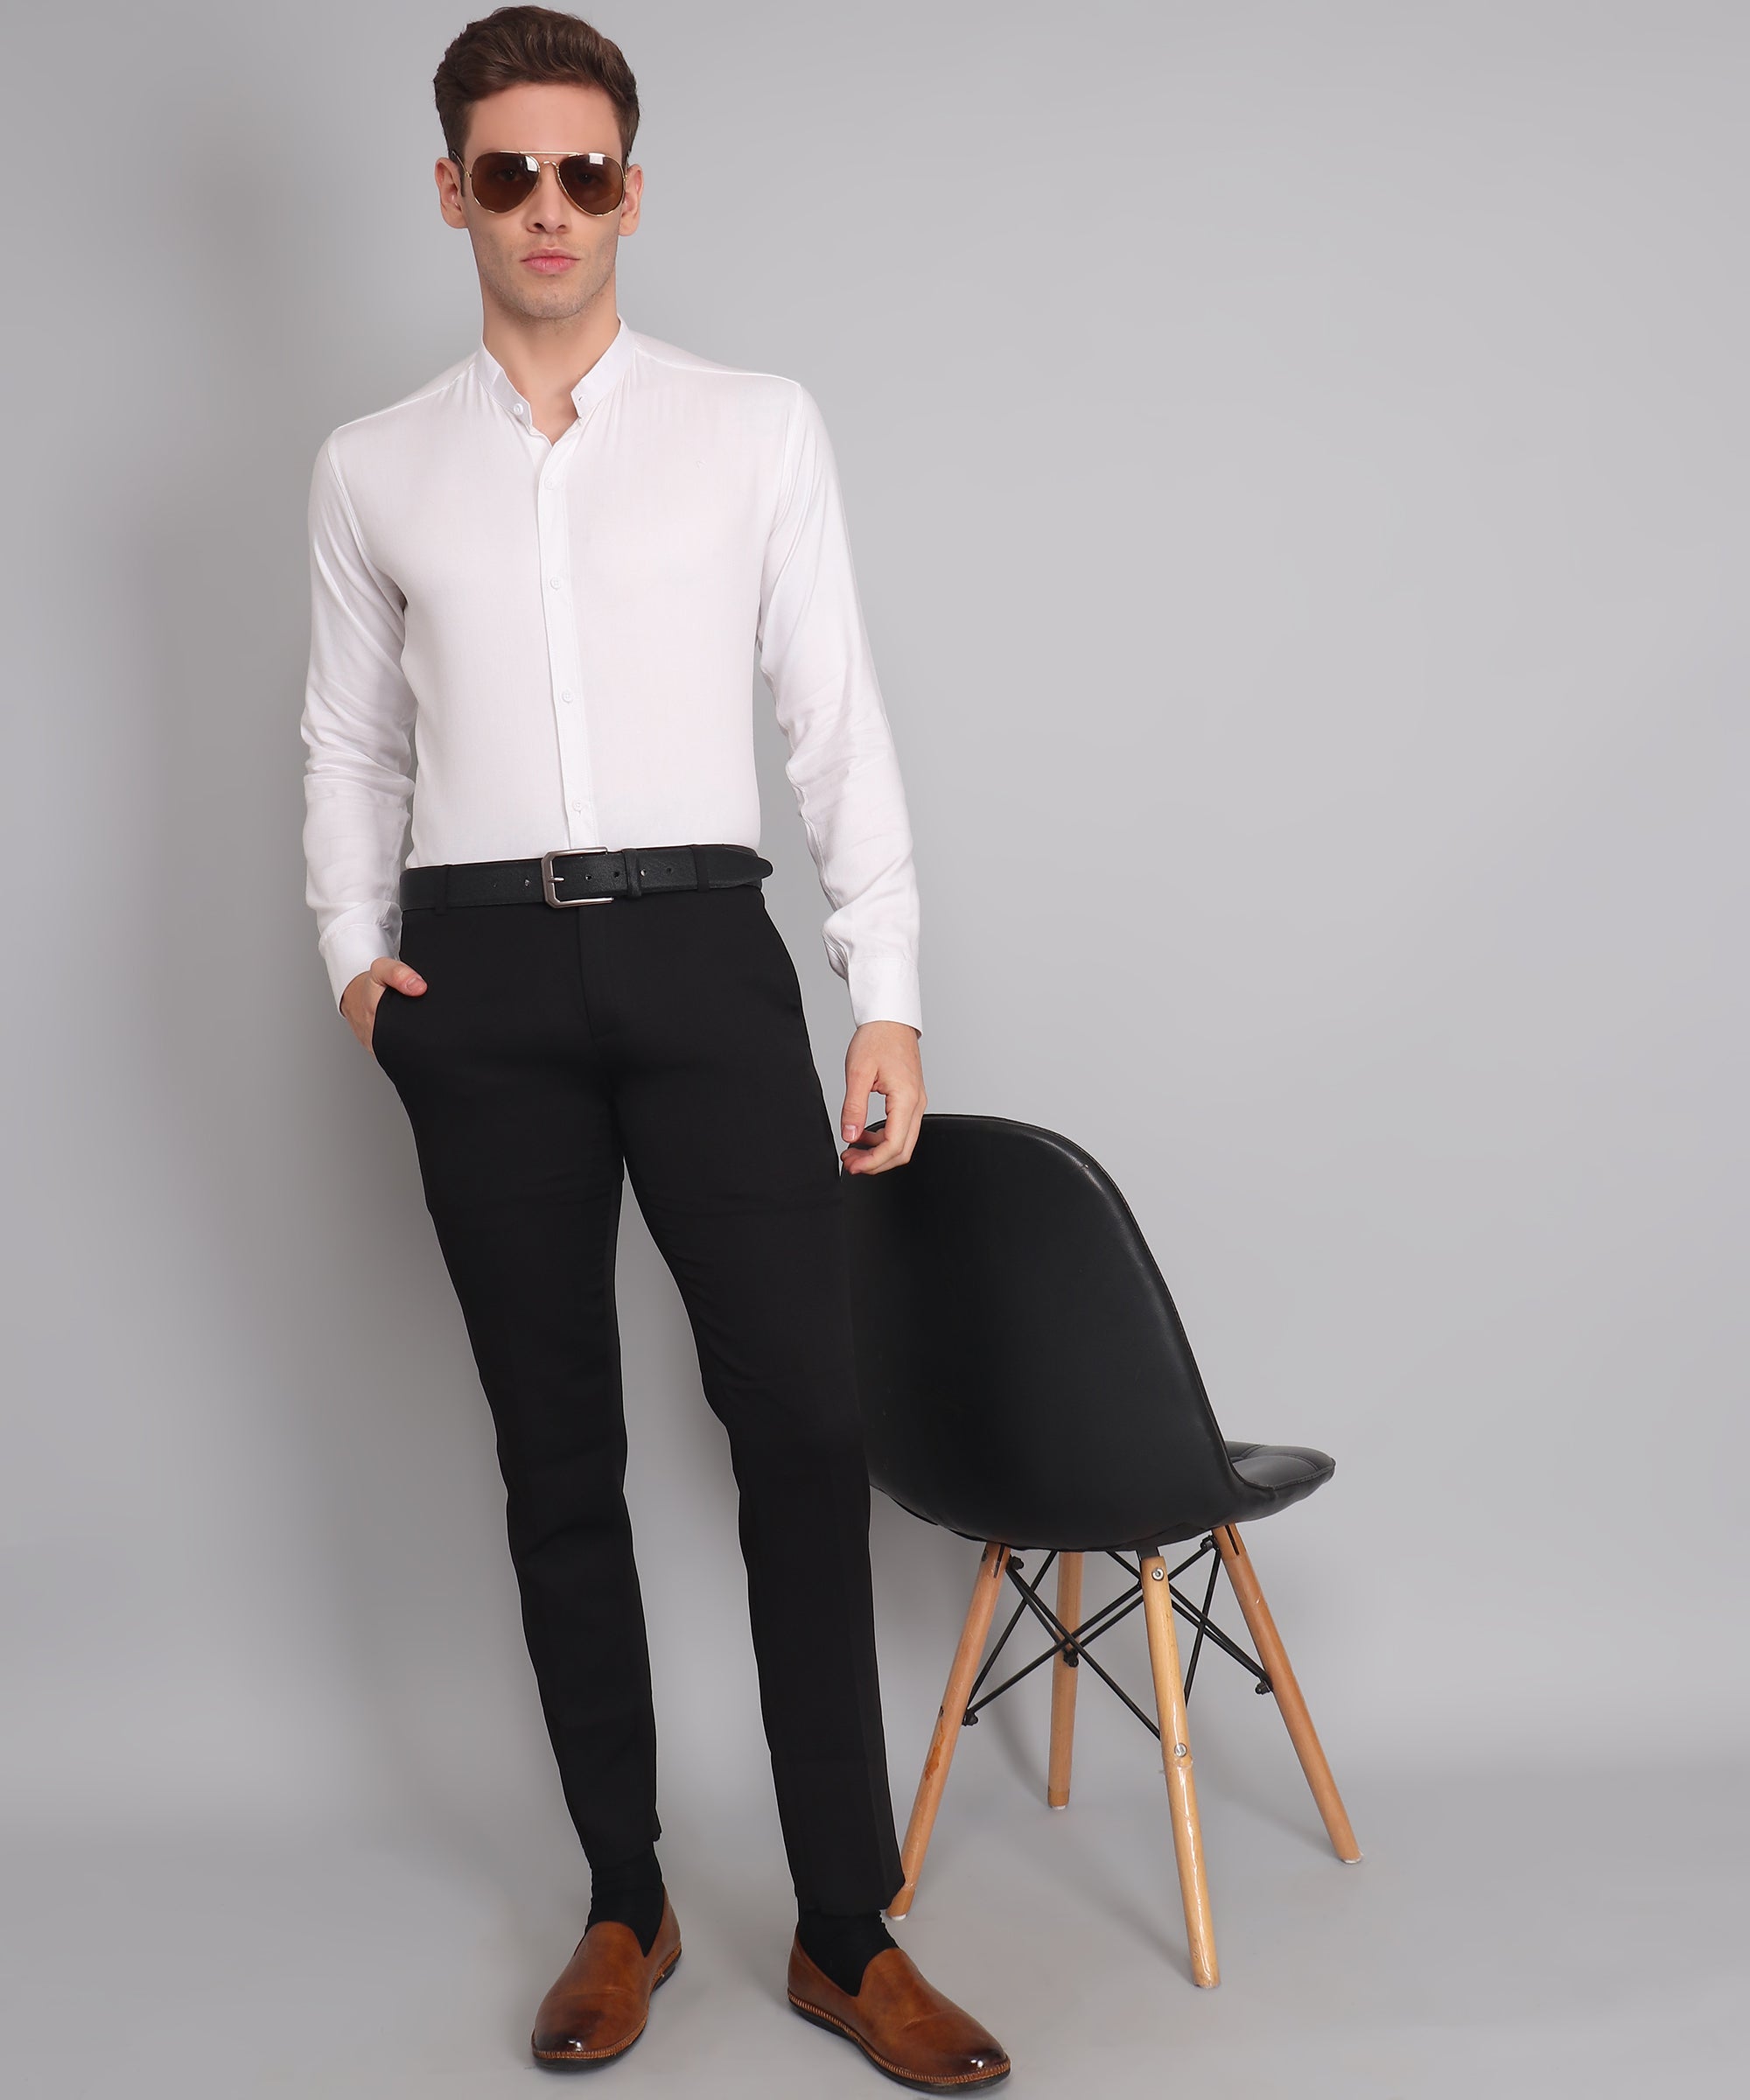 Crisp Elegance: The Timeless Allure of the Formal White Cotton Shirt for Men